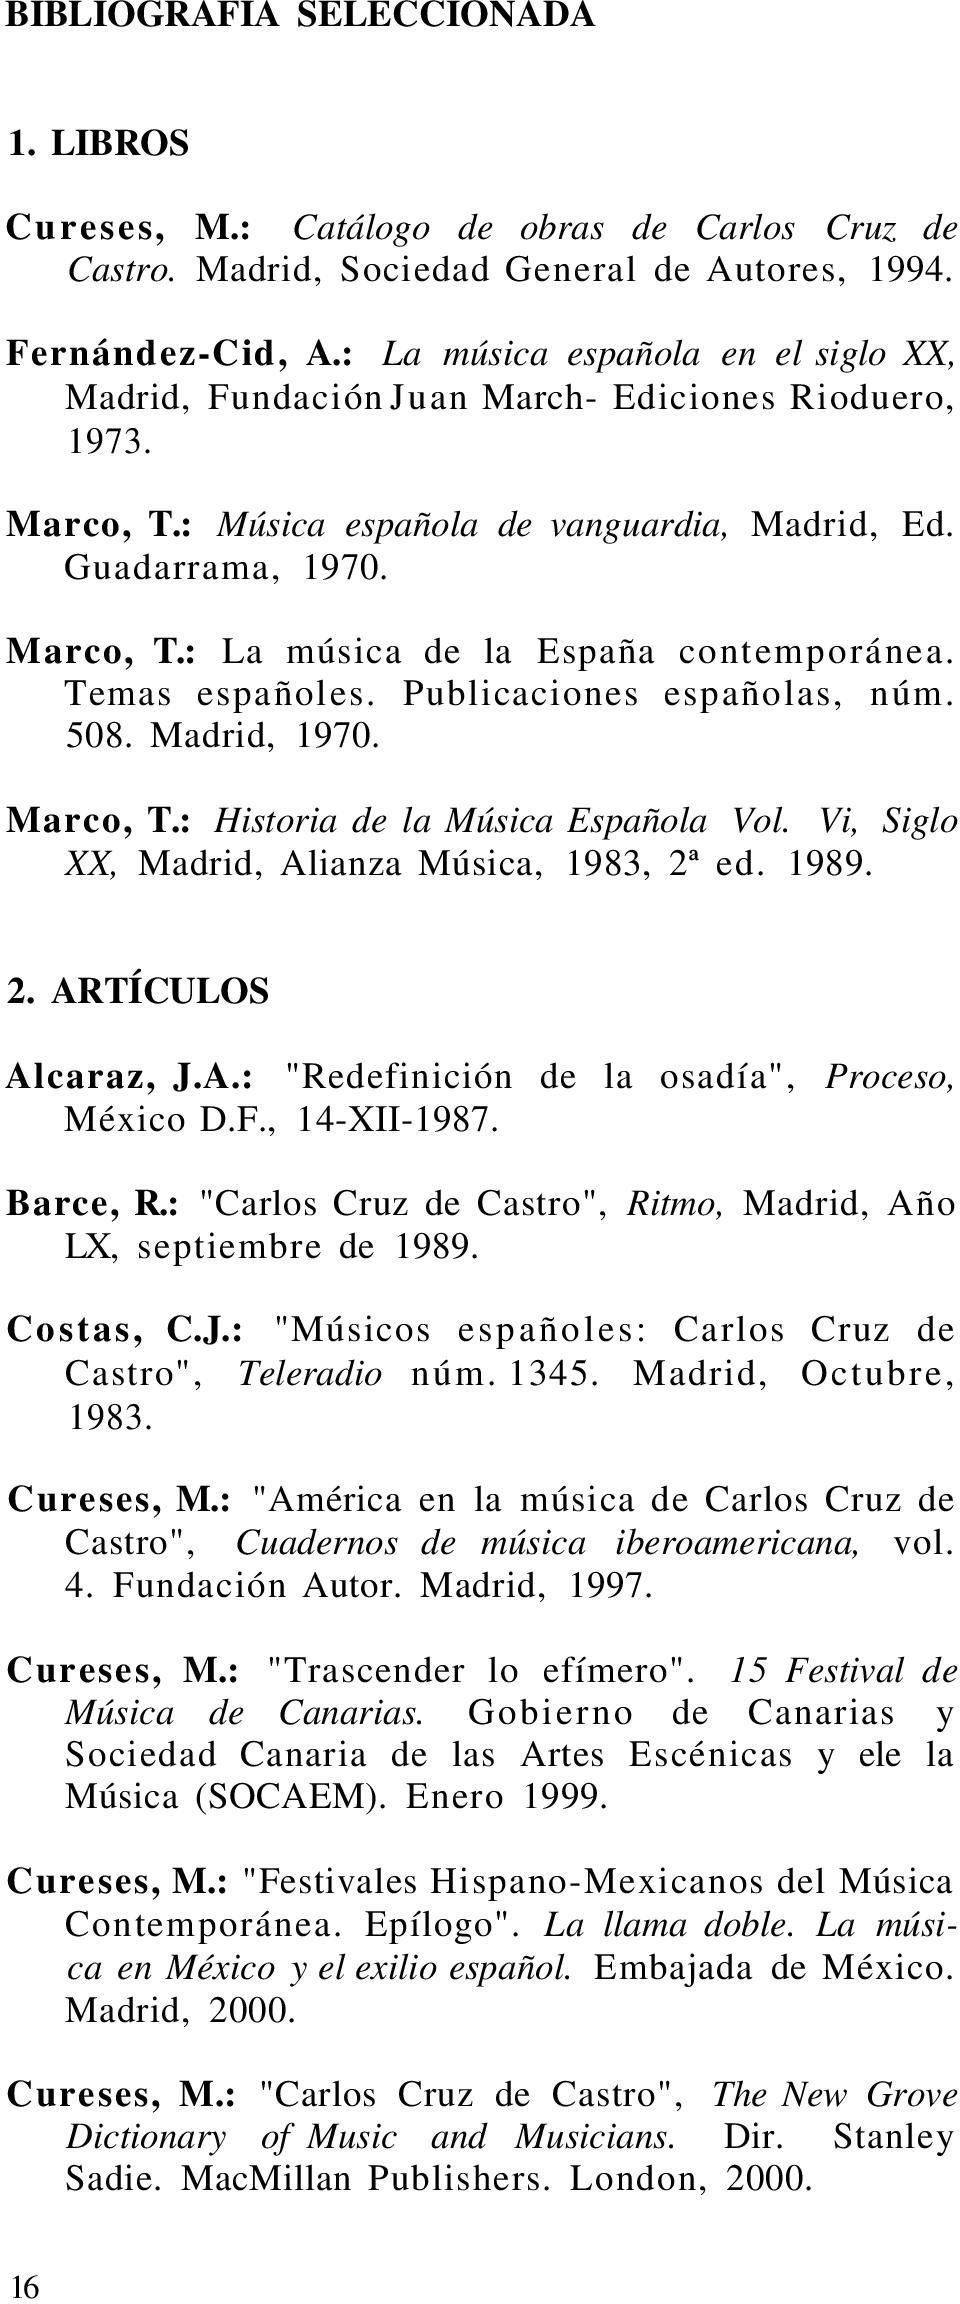 Temas españoles. Publicaciones españolas, núm. 508. Madrid, 1970. Marco, T.: Historia de la Música Española Vol. Vi, Siglo XX, Madrid, Alianza Música, 1983, 2ª ed. 1989. 2. ARTÍCULOS Alcaraz, J.A.: "Redefinición de la osadía", Proceso, México D.